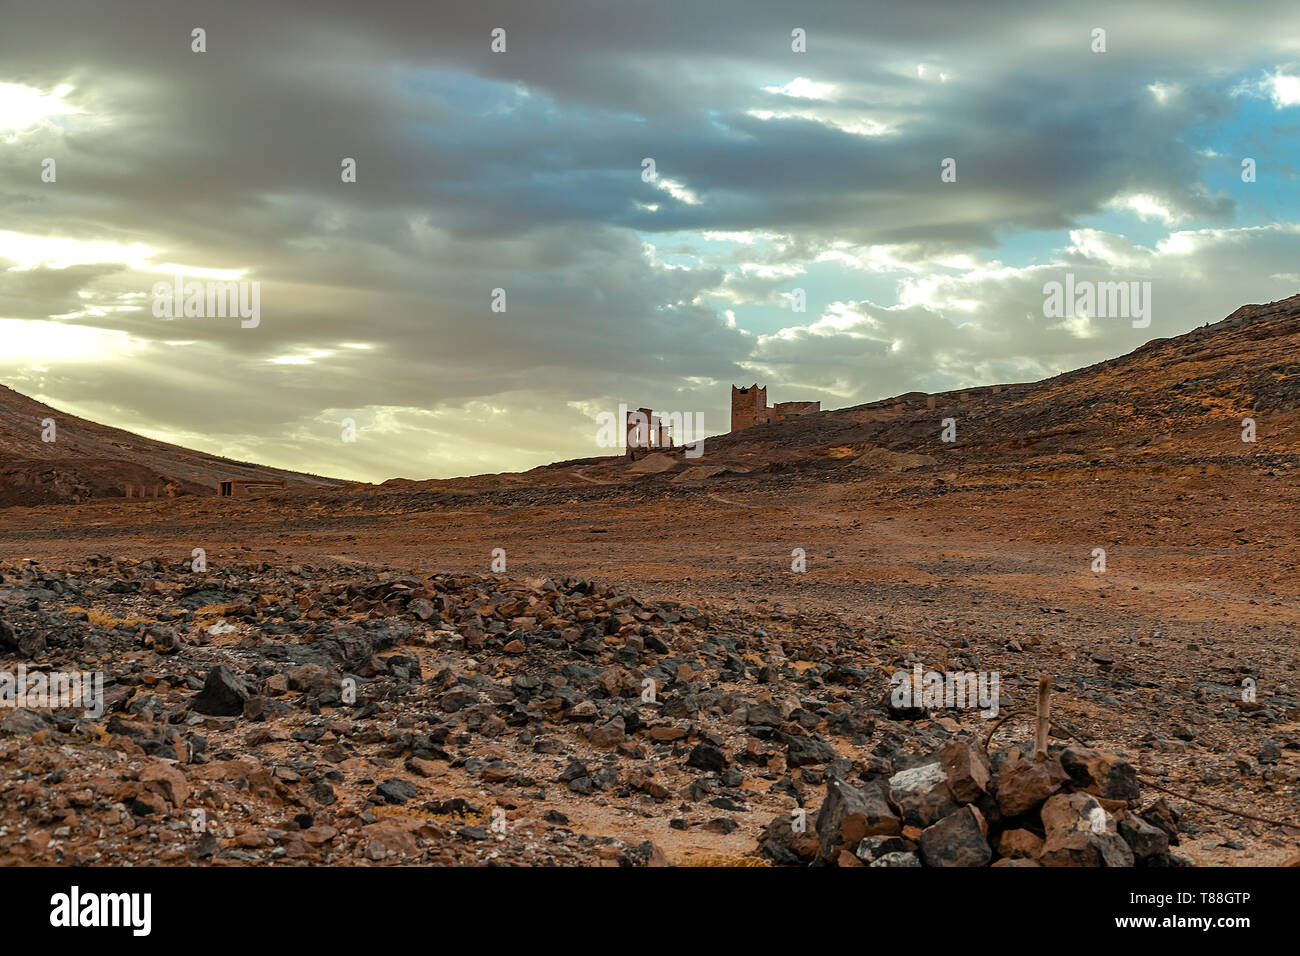 Hamada du Draa, désert de pierre marocain à l'aube dans l'avant-plan, les montagnes en arrière-plan, Maroc Banque D'Images